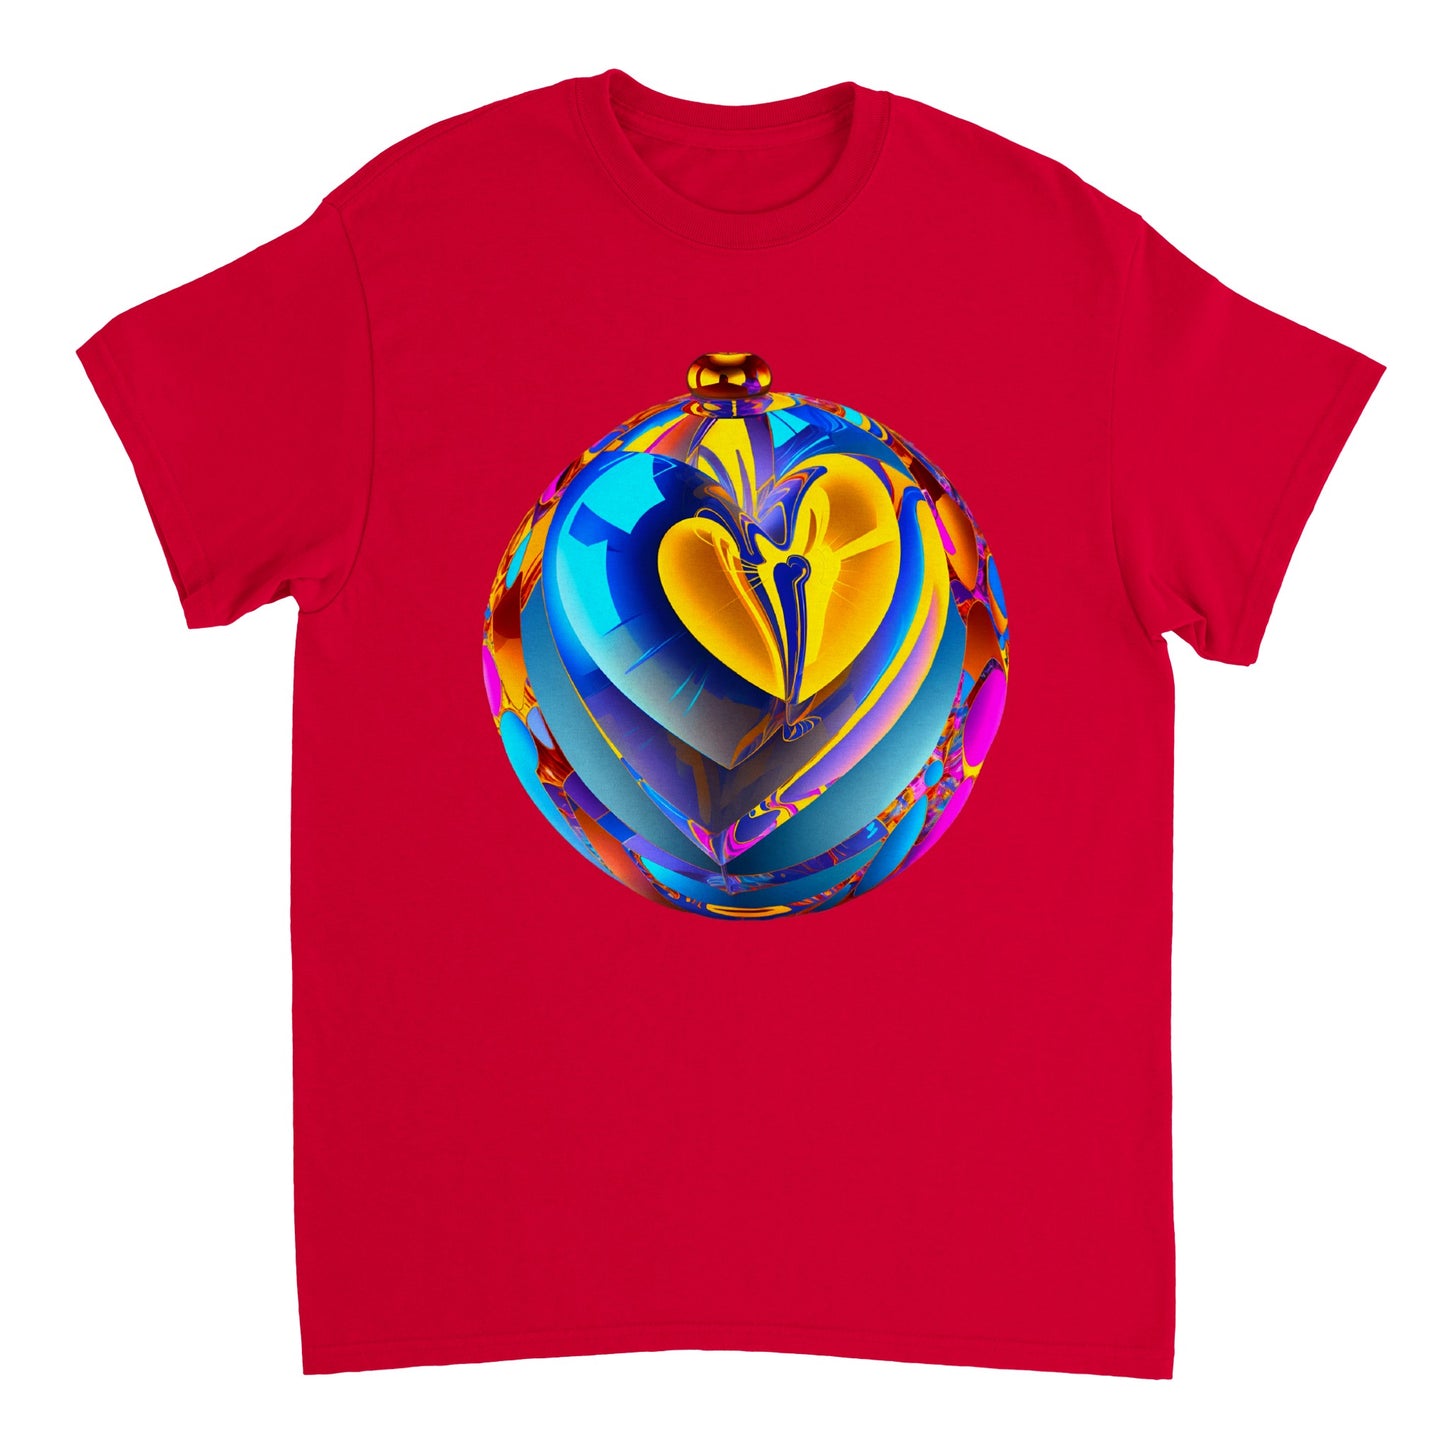 Love Heart - Heavyweight Unisex Crewneck T-shirt 34